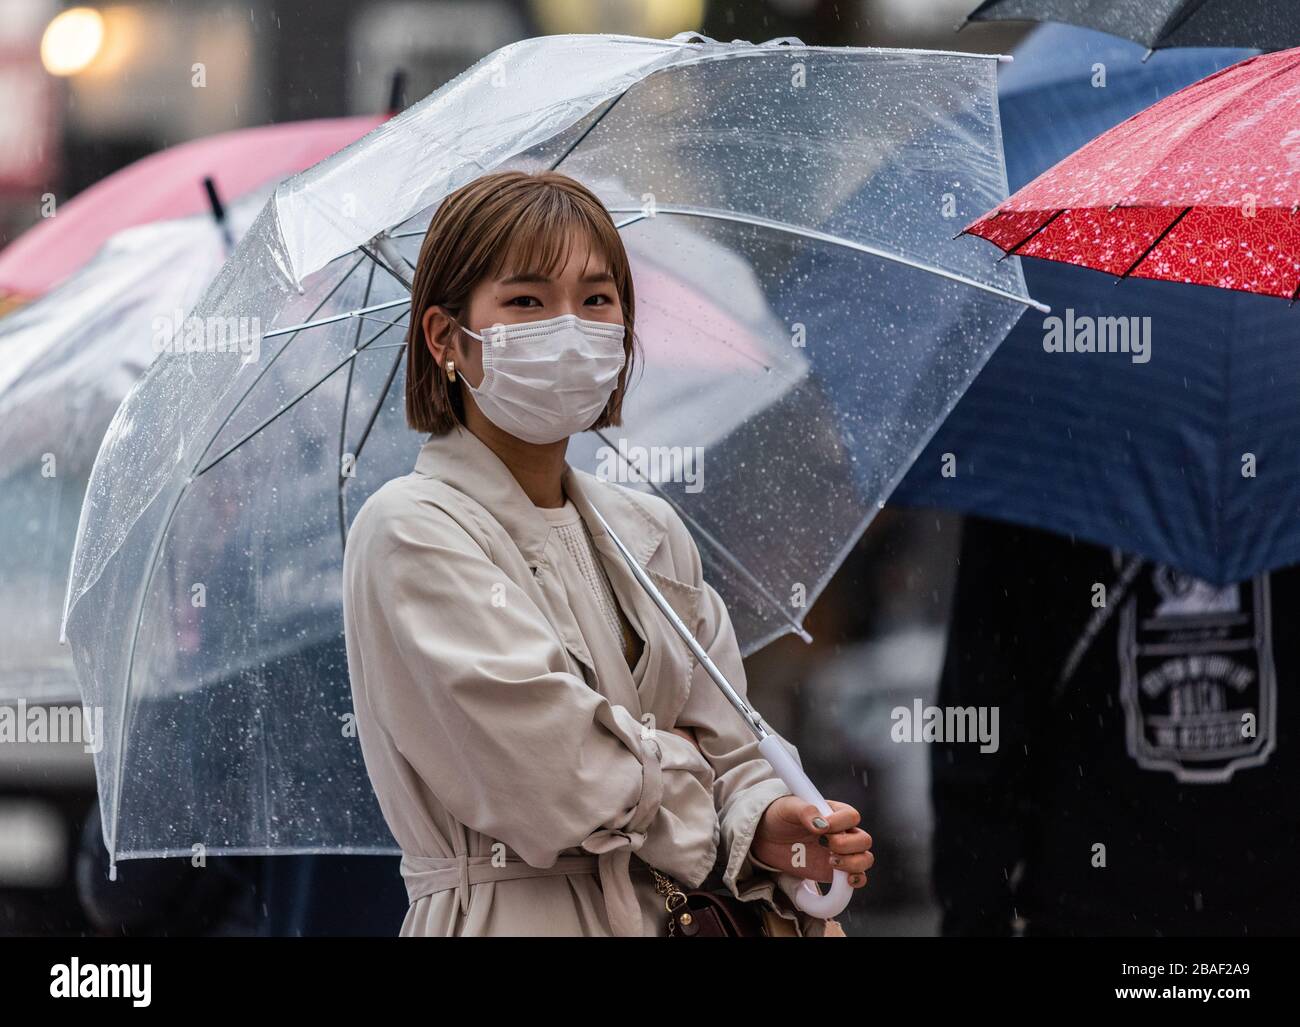 Tokyo, Giappone – 10 marzo 2020. Donna che indossa una maschera sulla scia della pandemia di coronavirus globale, in una giornata piovosa a Tokyo. Foto Stock